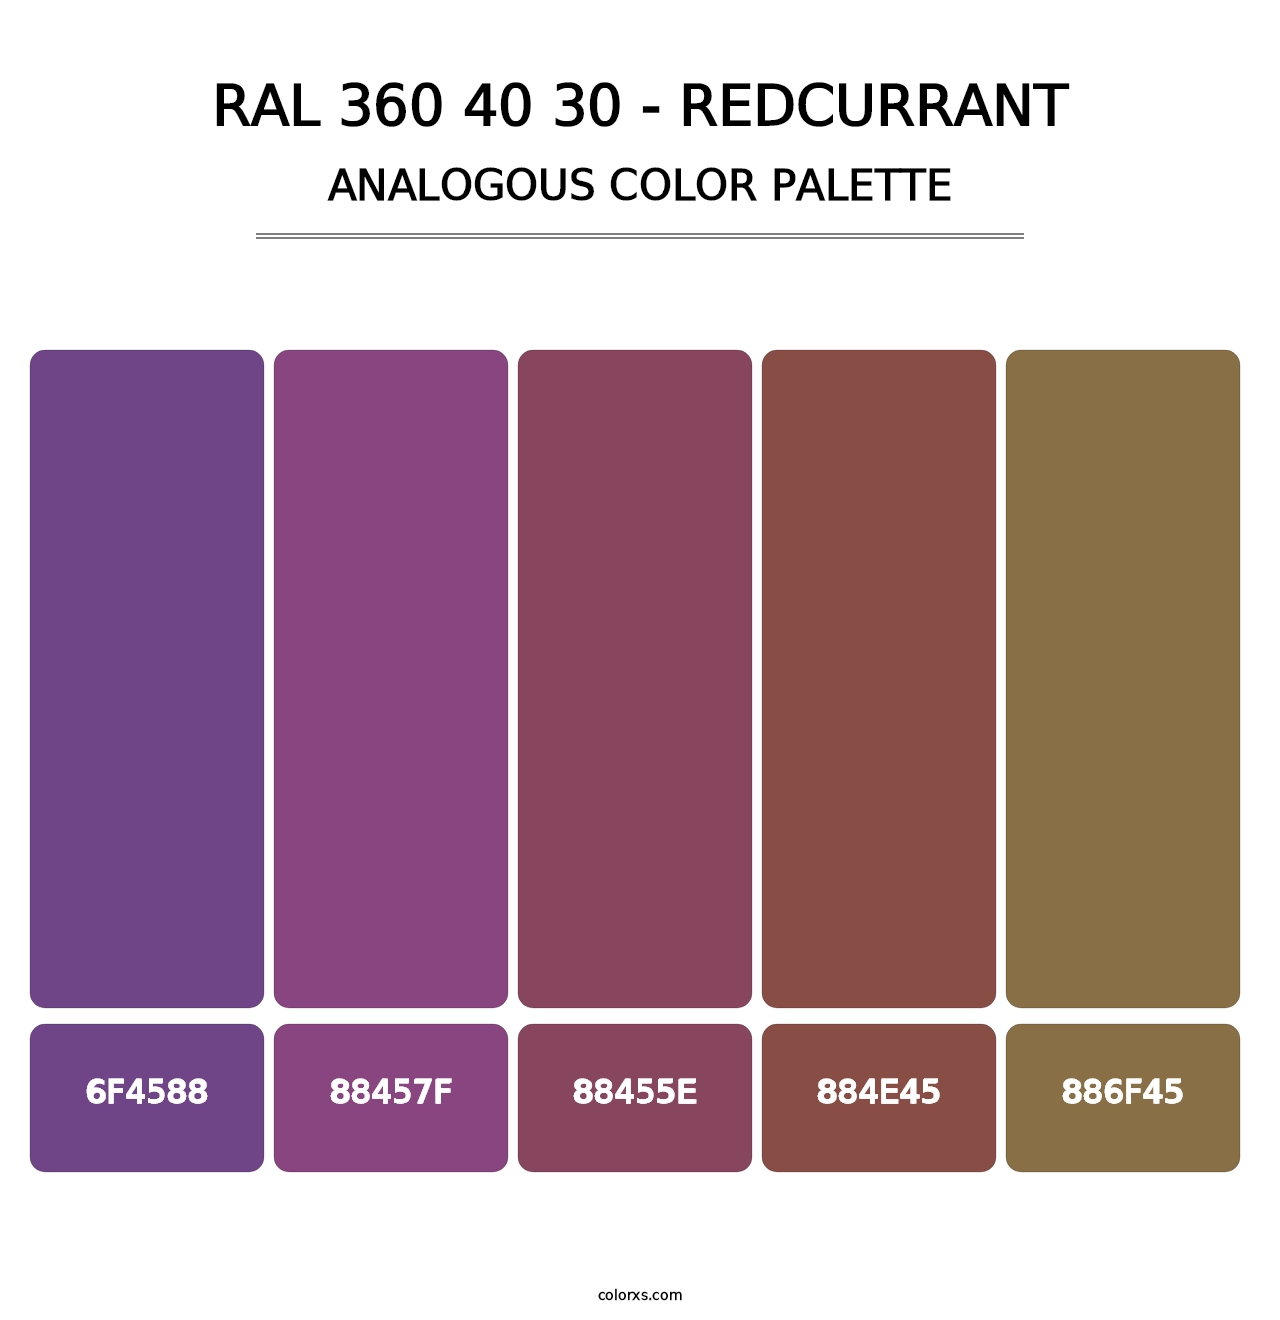 RAL 360 40 30 - Redcurrant - Analogous Color Palette